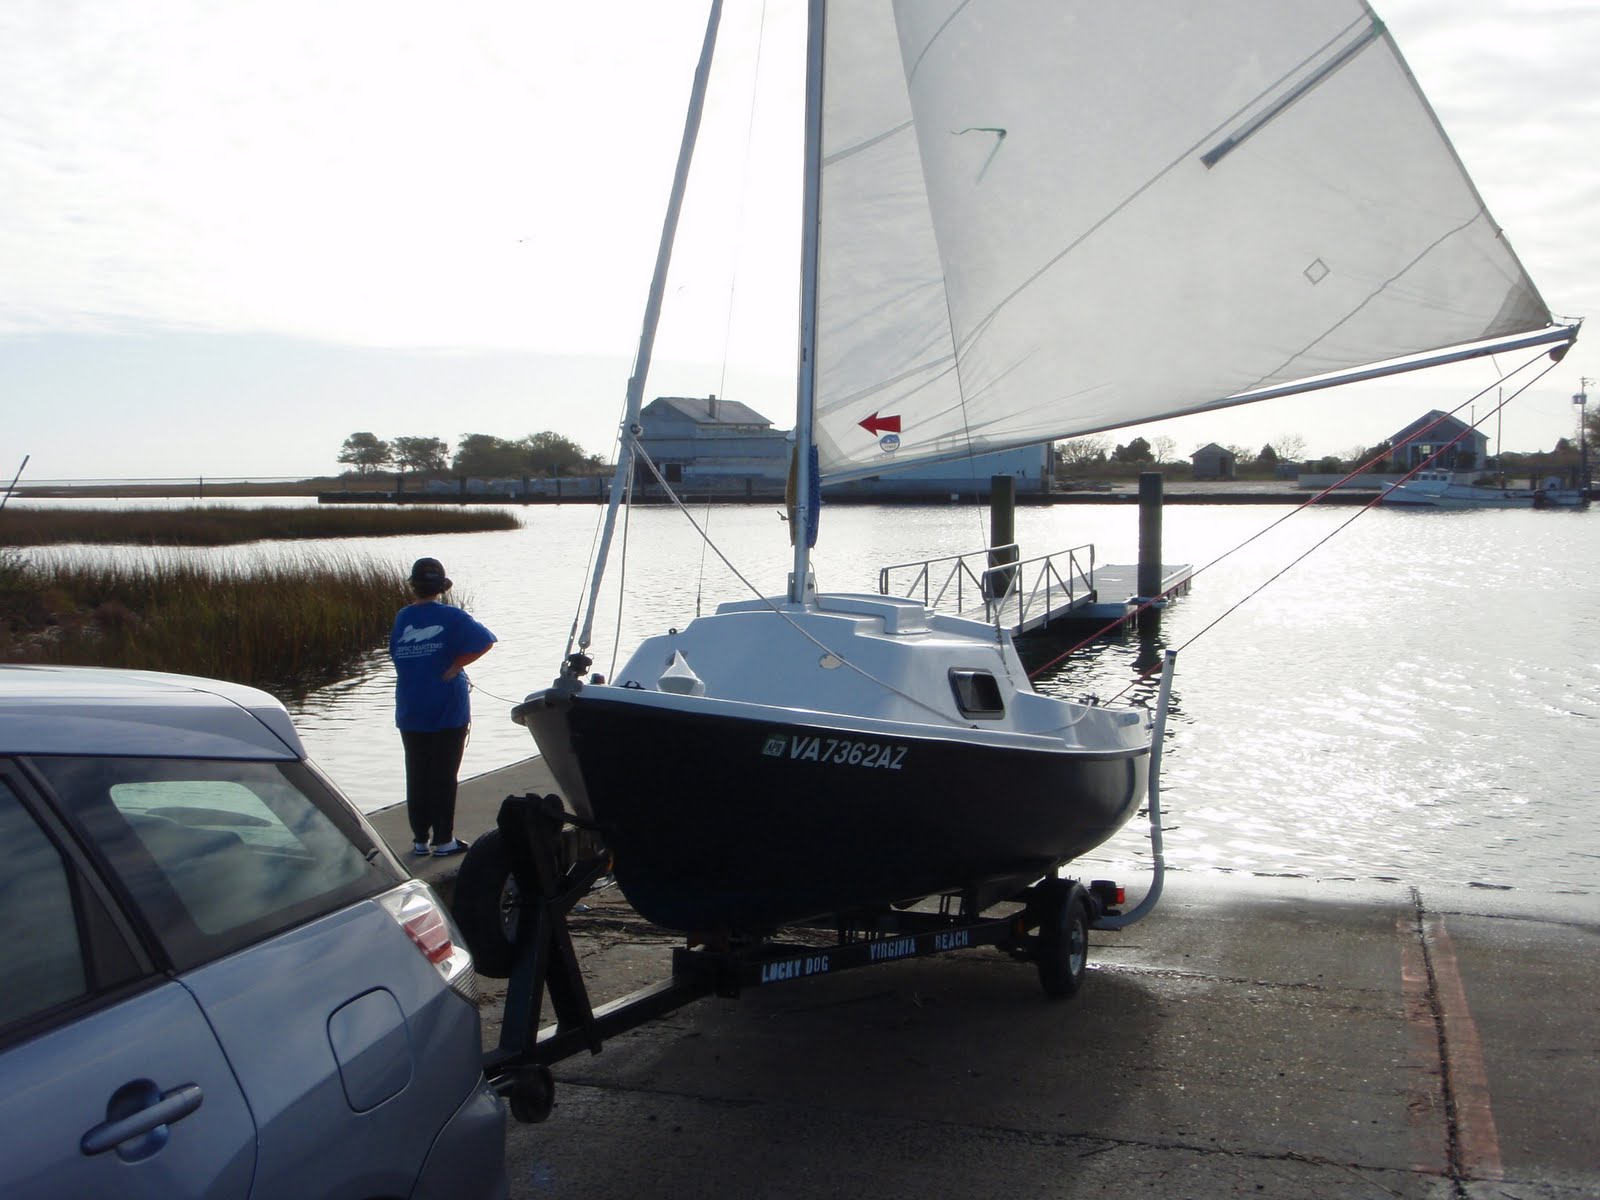 newport 16 sailboat problems